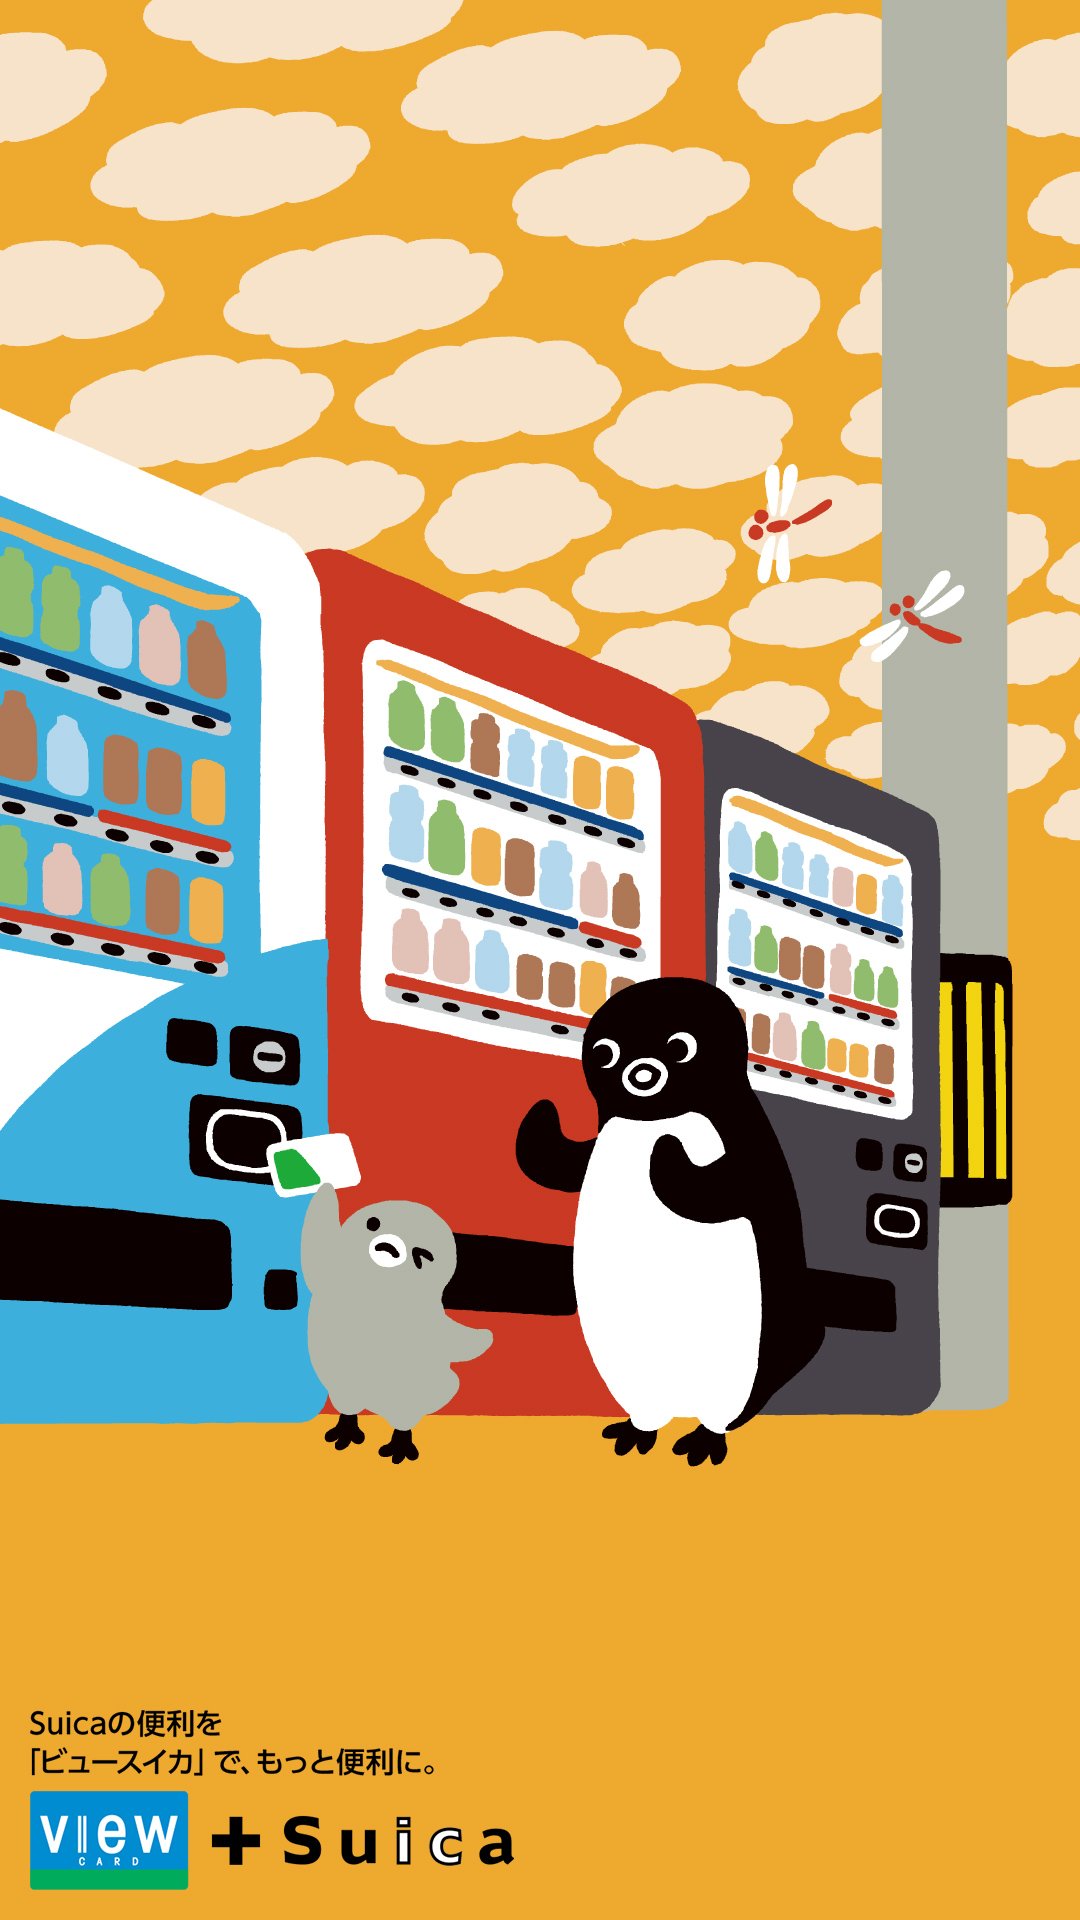 たびきりん 9月のsuicaペンギン壁紙はこちらです 赤トンボと子ペンギンを応援してるようなsuicaペンギンかわいいです T Co Jjtyclulcx Twitter